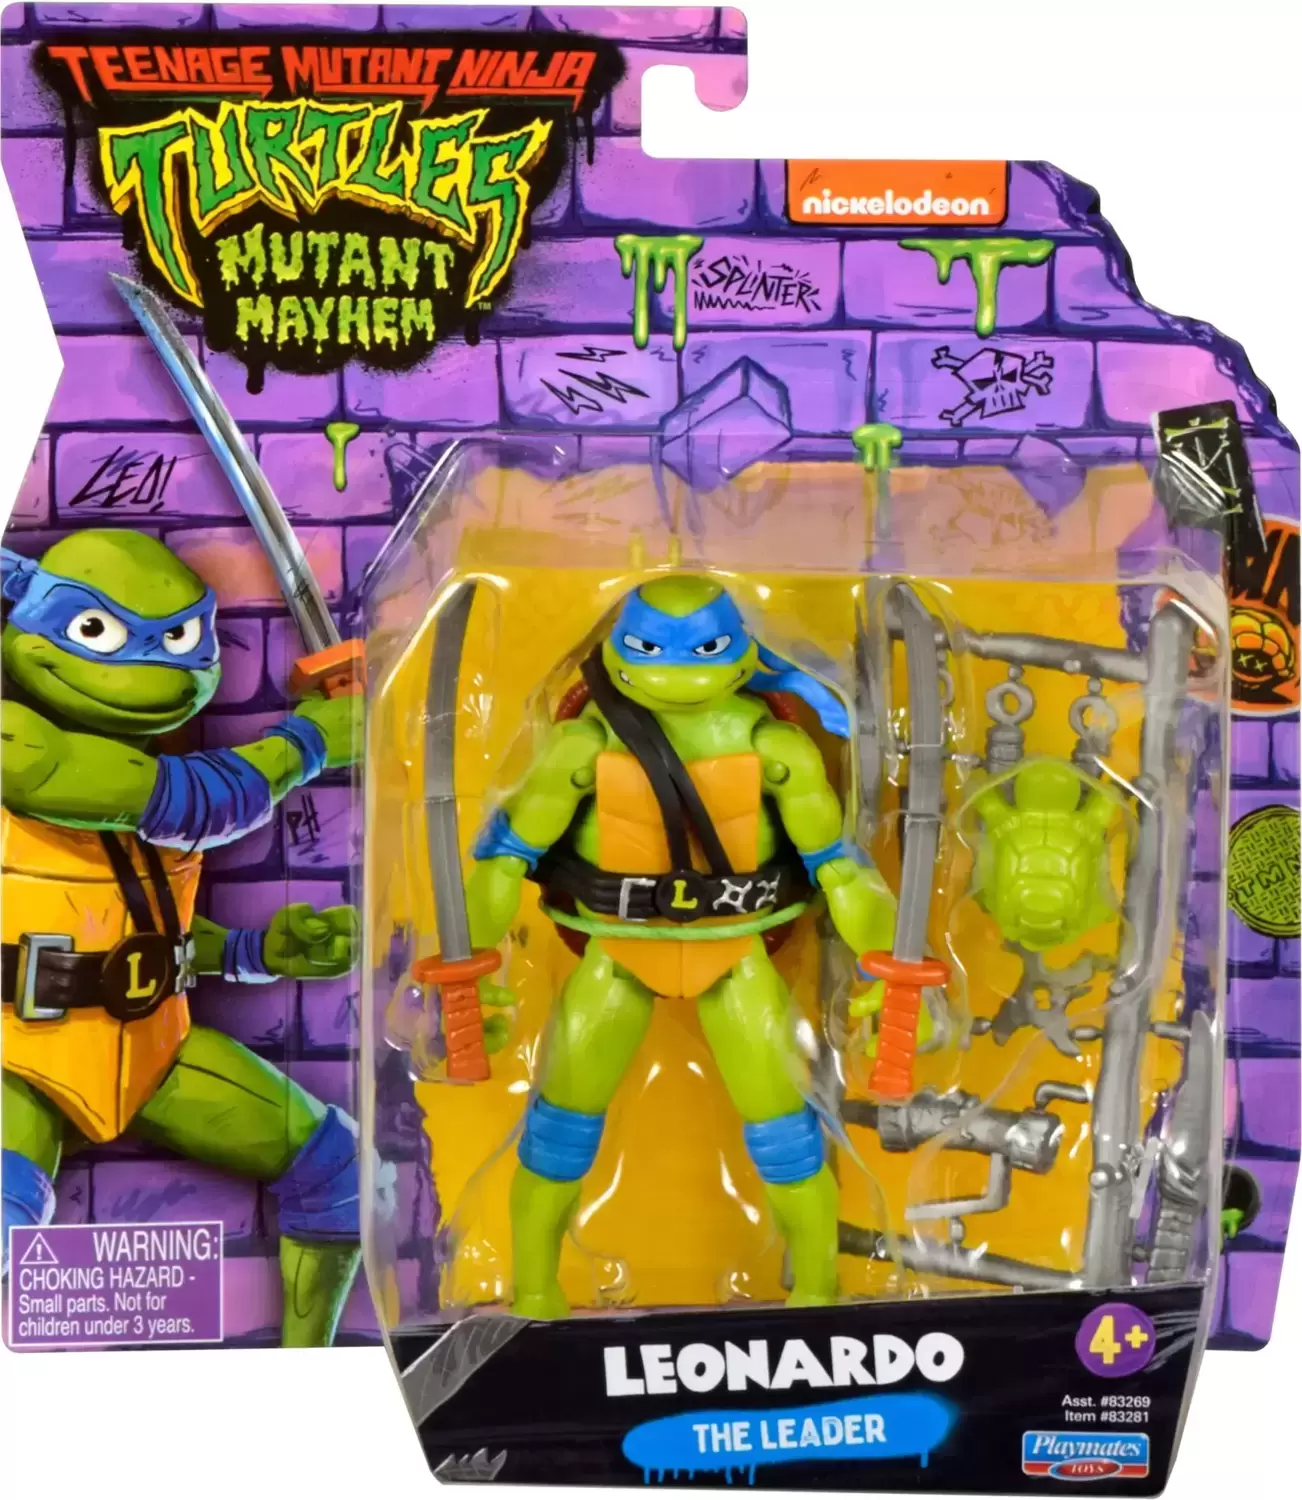 Teenage Mutant Ninja Turtles Mutant Mayhem - Leonardo - The Leader